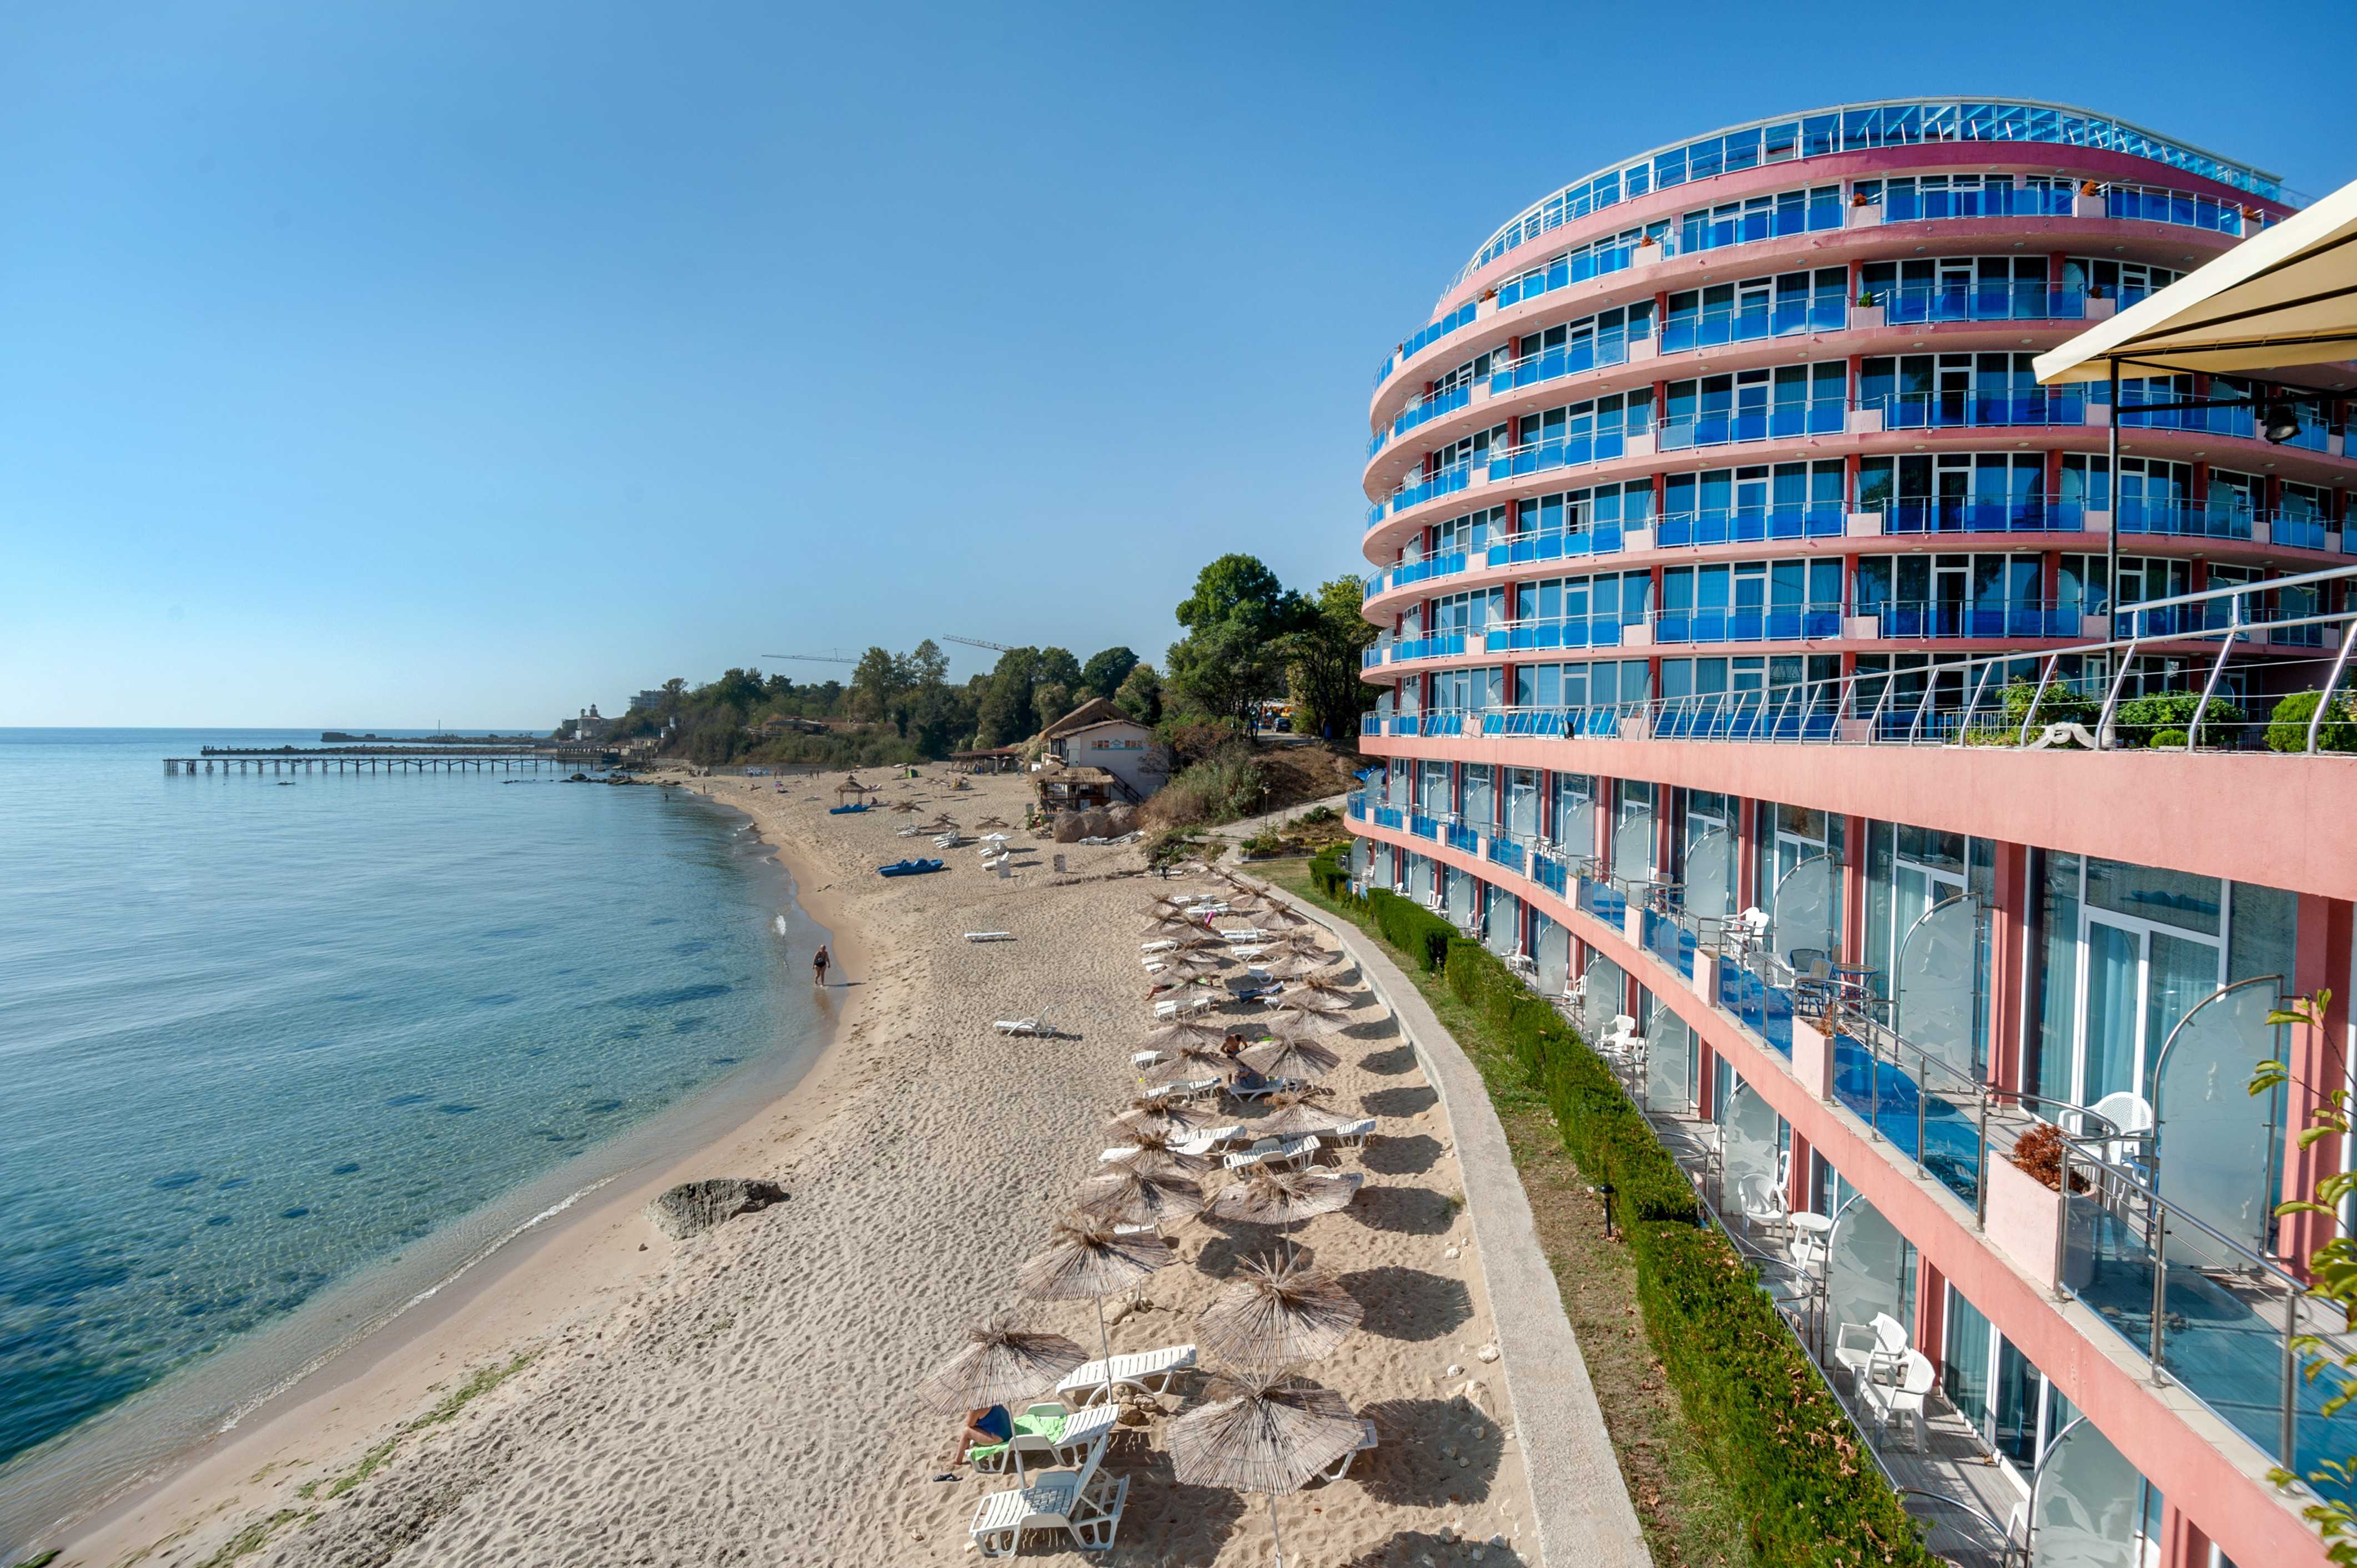 Рассказываем, как организовать отдых на курорте Равда в Болгарии Какие пляжи выбрать, какие достопримечательности посмотреть, какие отели лучше для отдыха